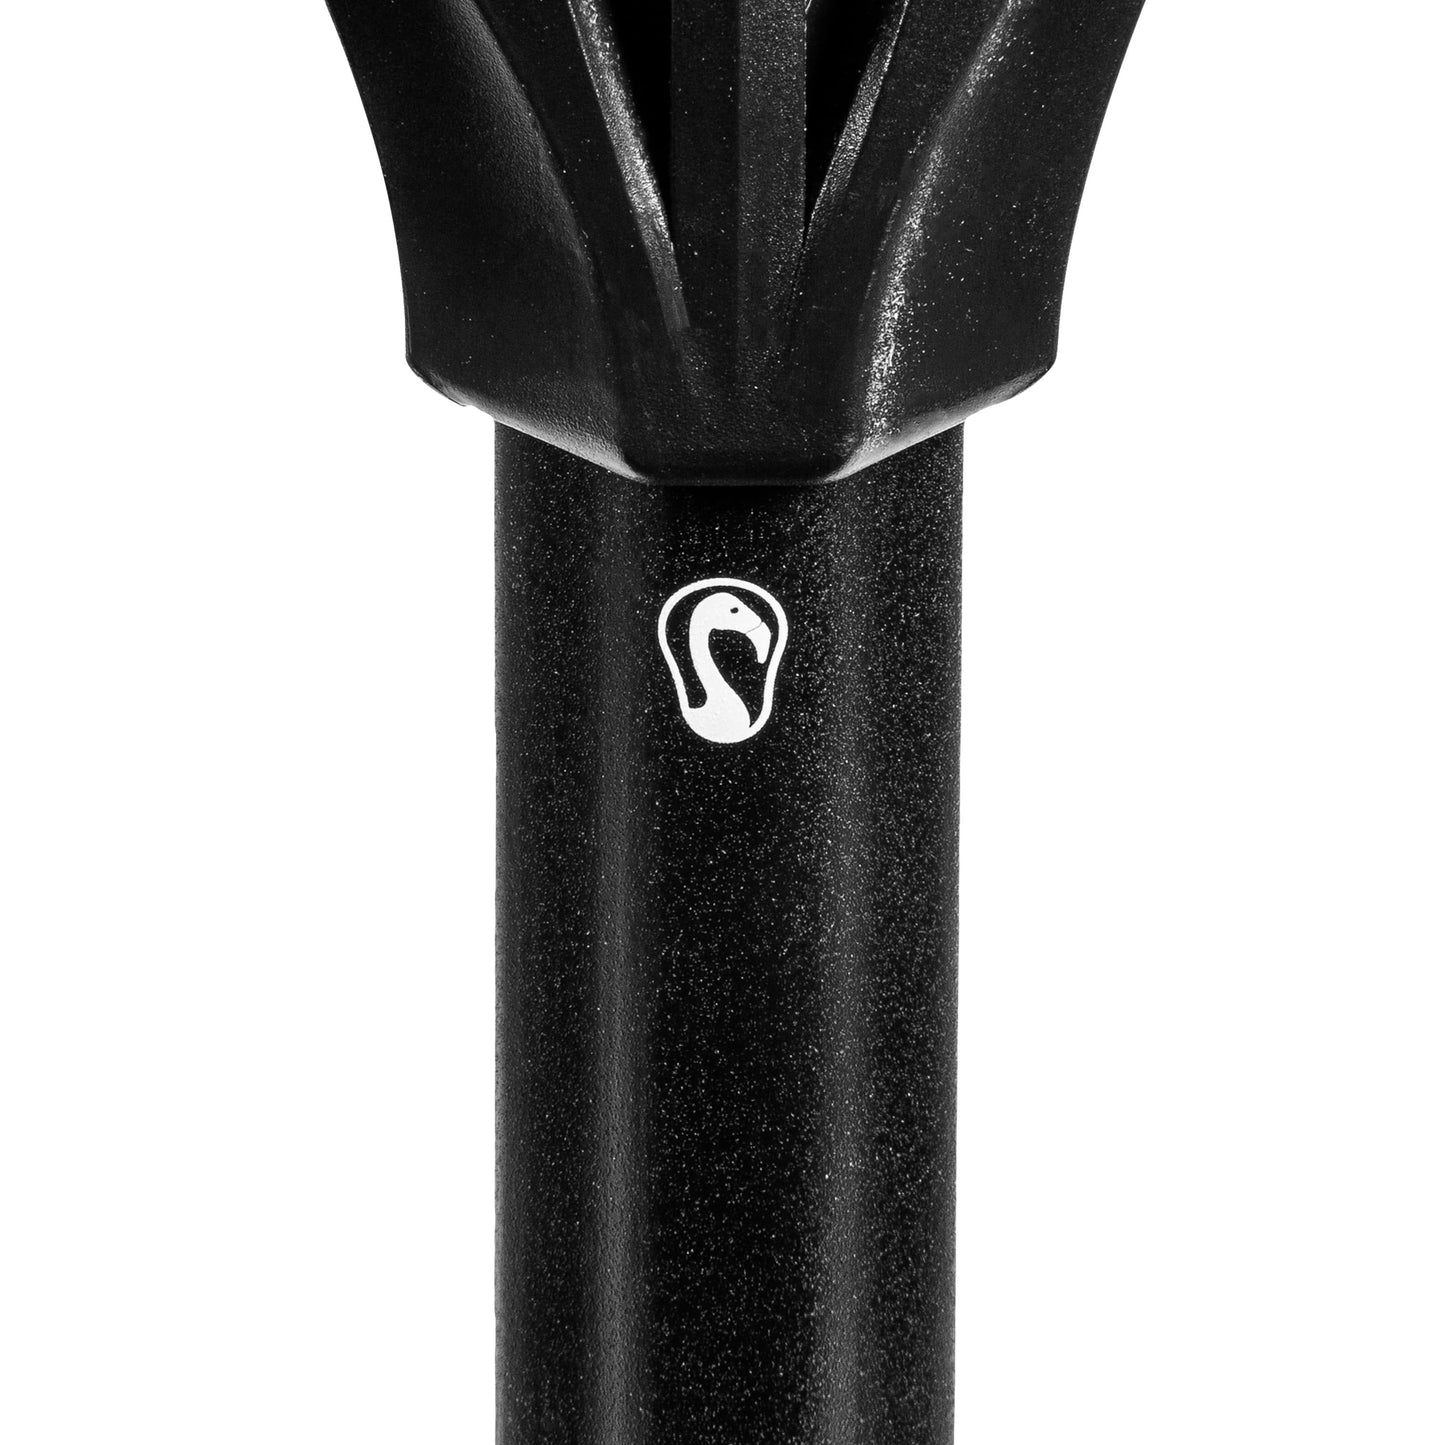 The Player Pro - Complete Defensive Lacrosse Stick for Men | Carbon Fiber Signature Lacrosse